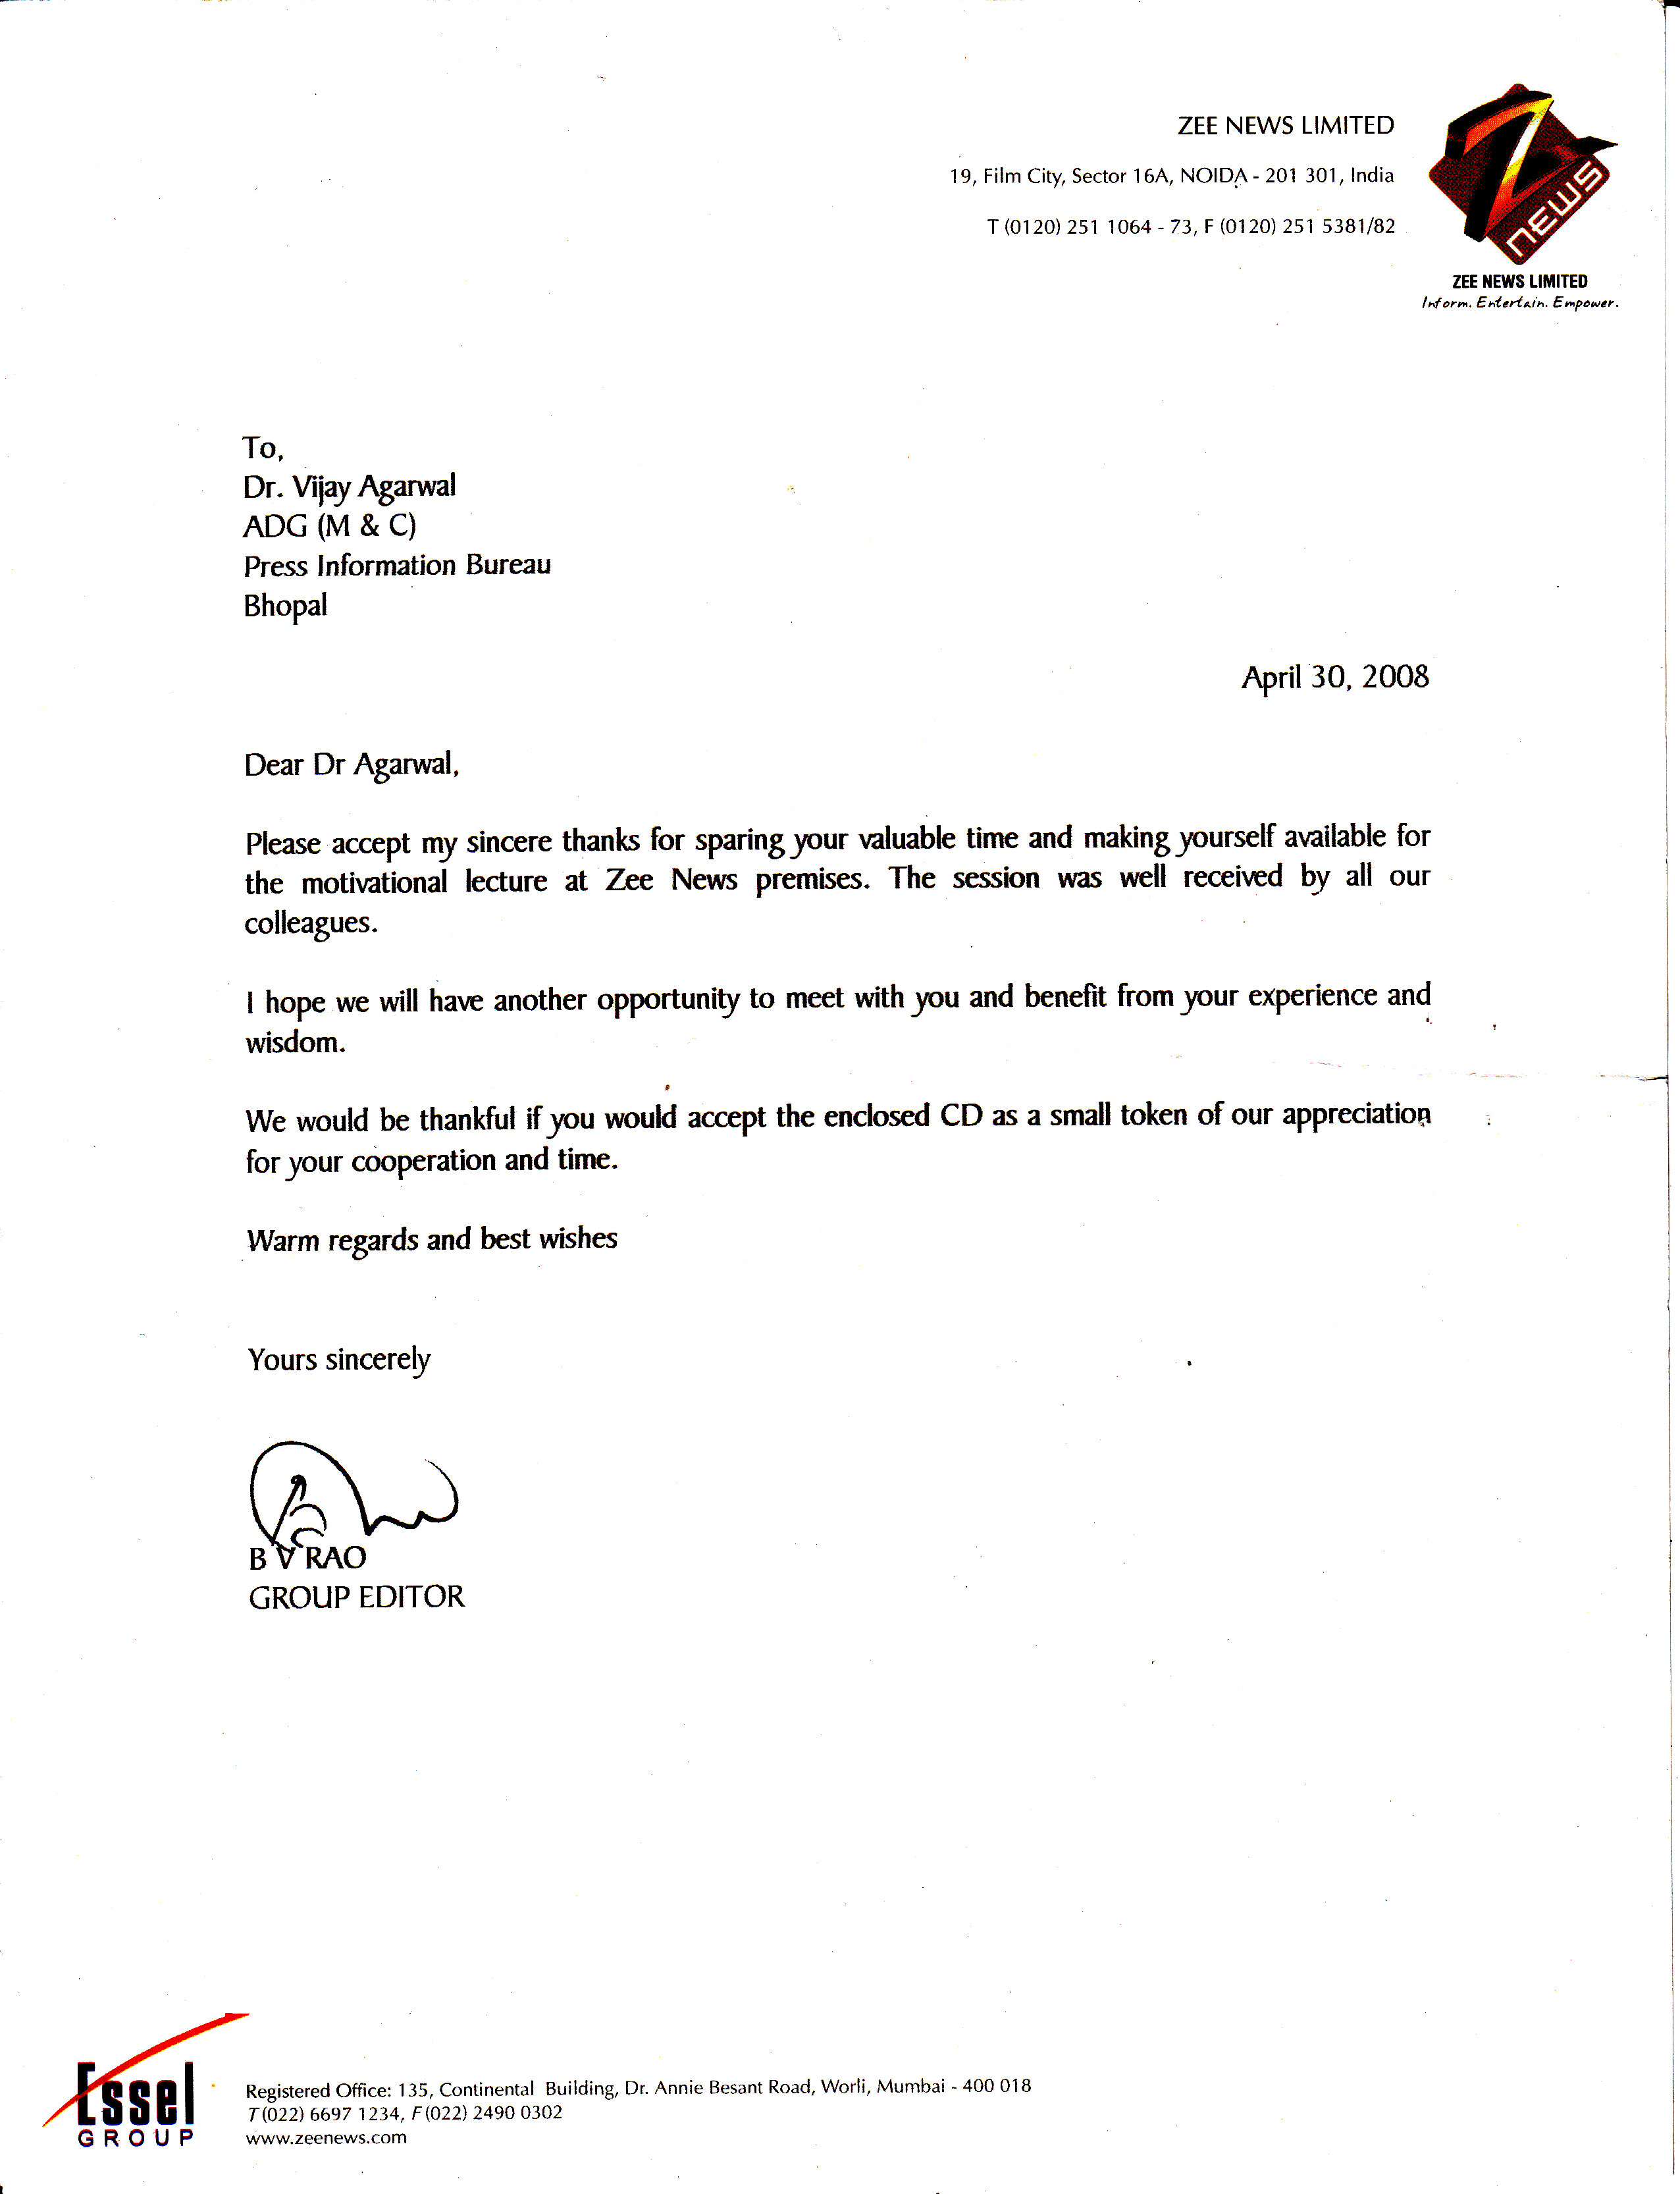 Letter from Zee News Ltd.